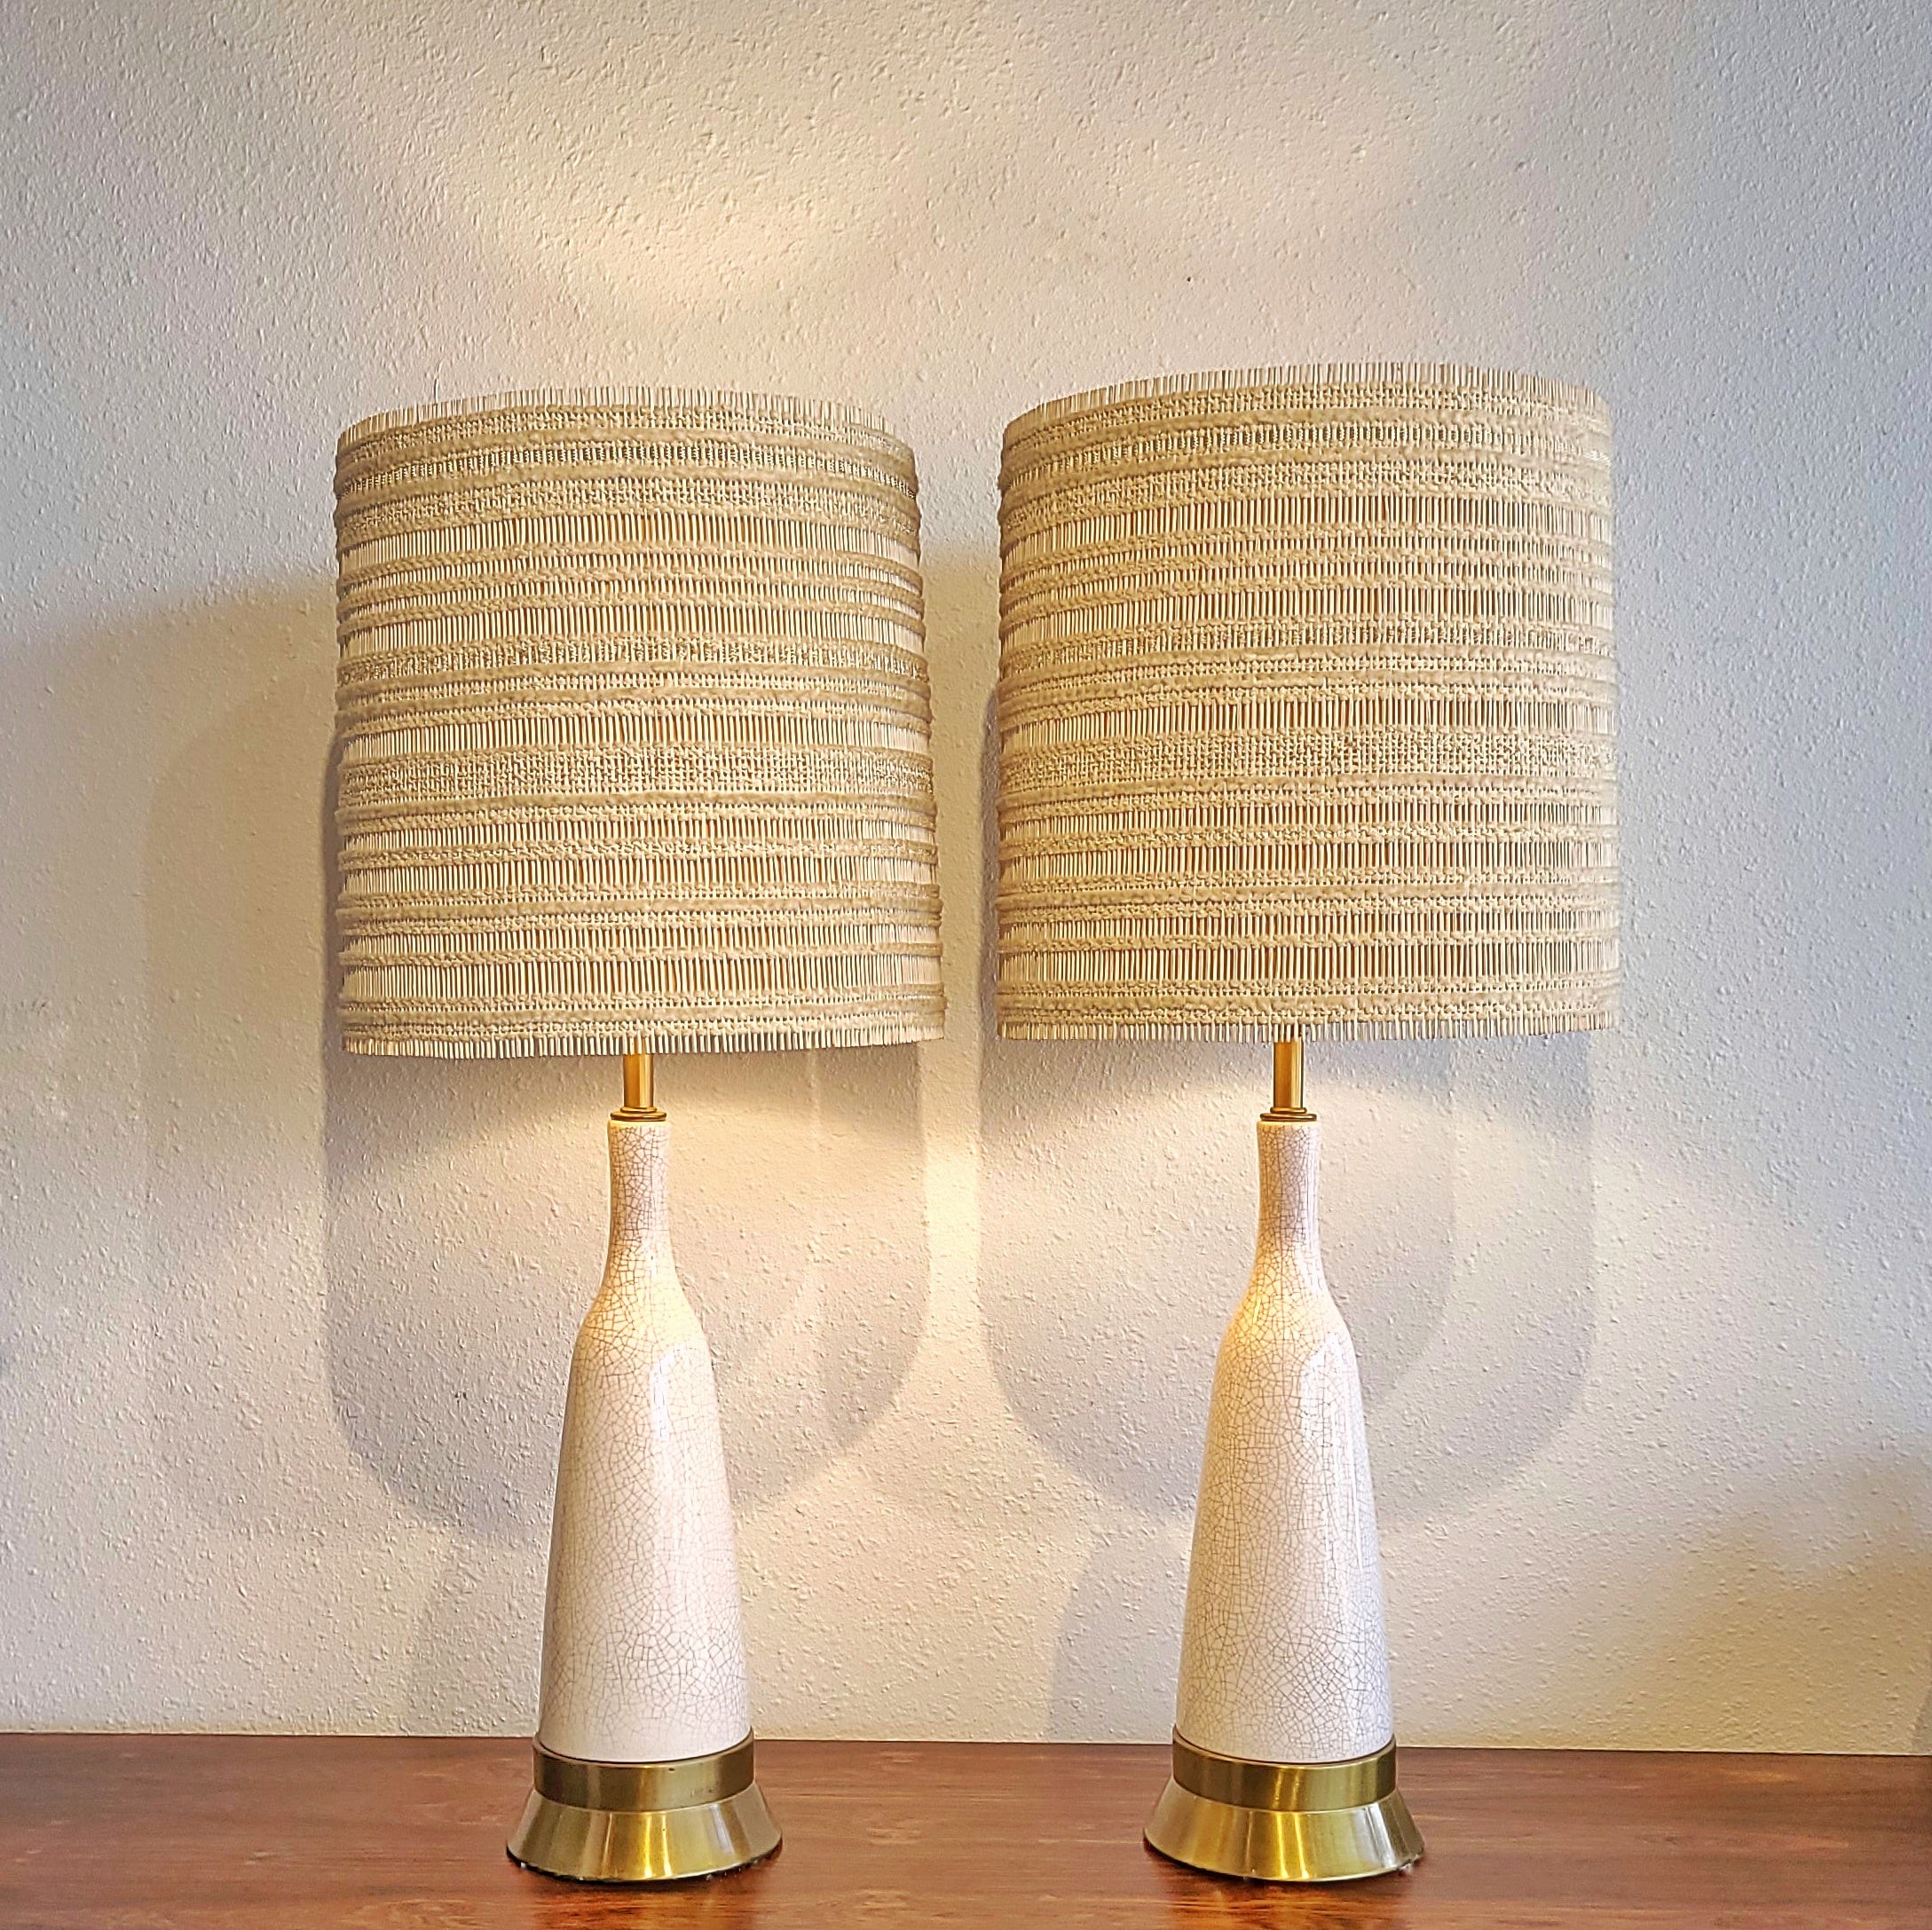 PAUL LÁSZLÓ & MARIA KIPP FOR WILSHIRE HOUSE CRACKLE GLAZE LAMPS